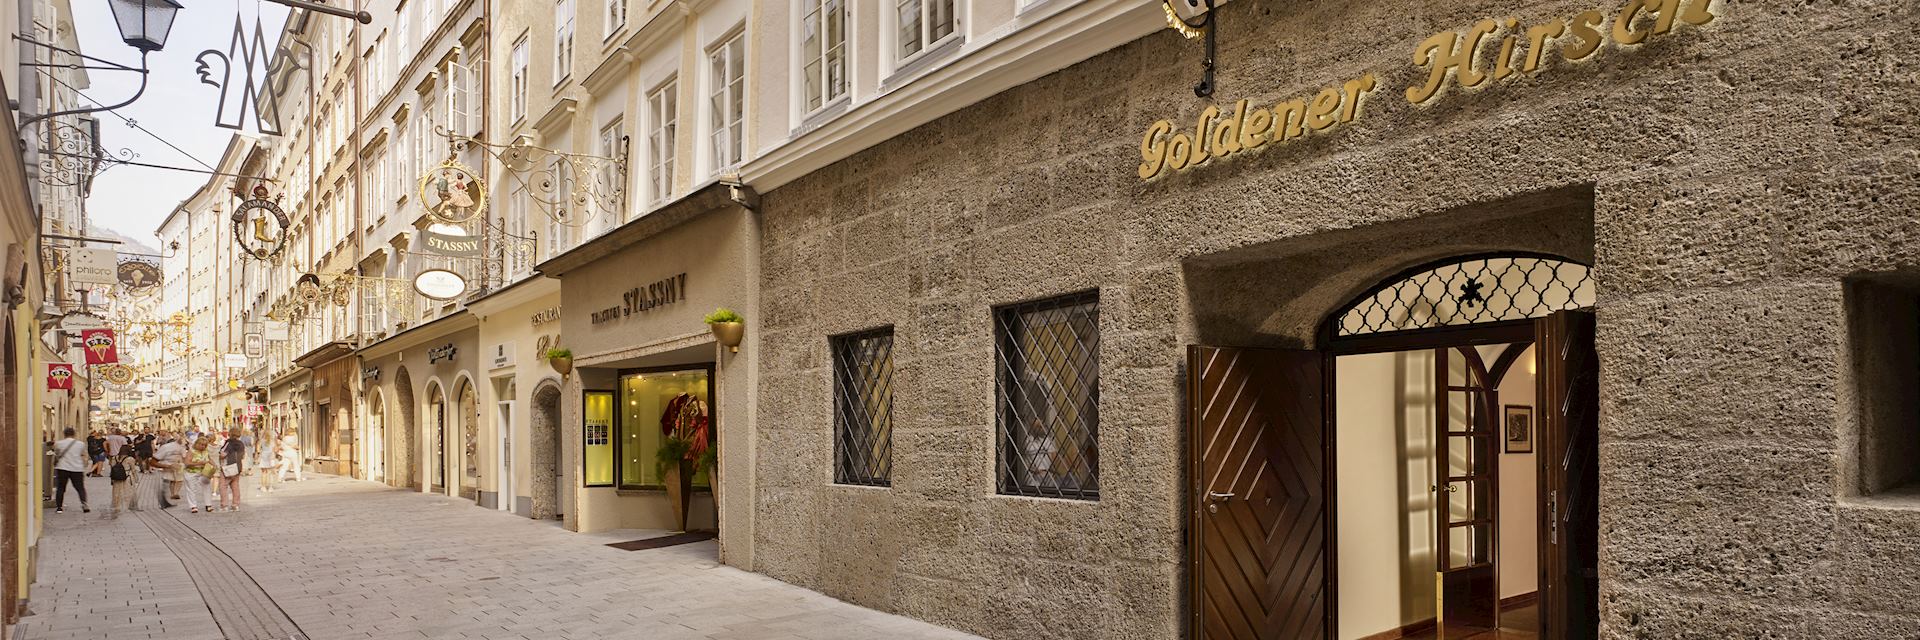 Hotel Goldener Hirsch, Hotels in Salzburg